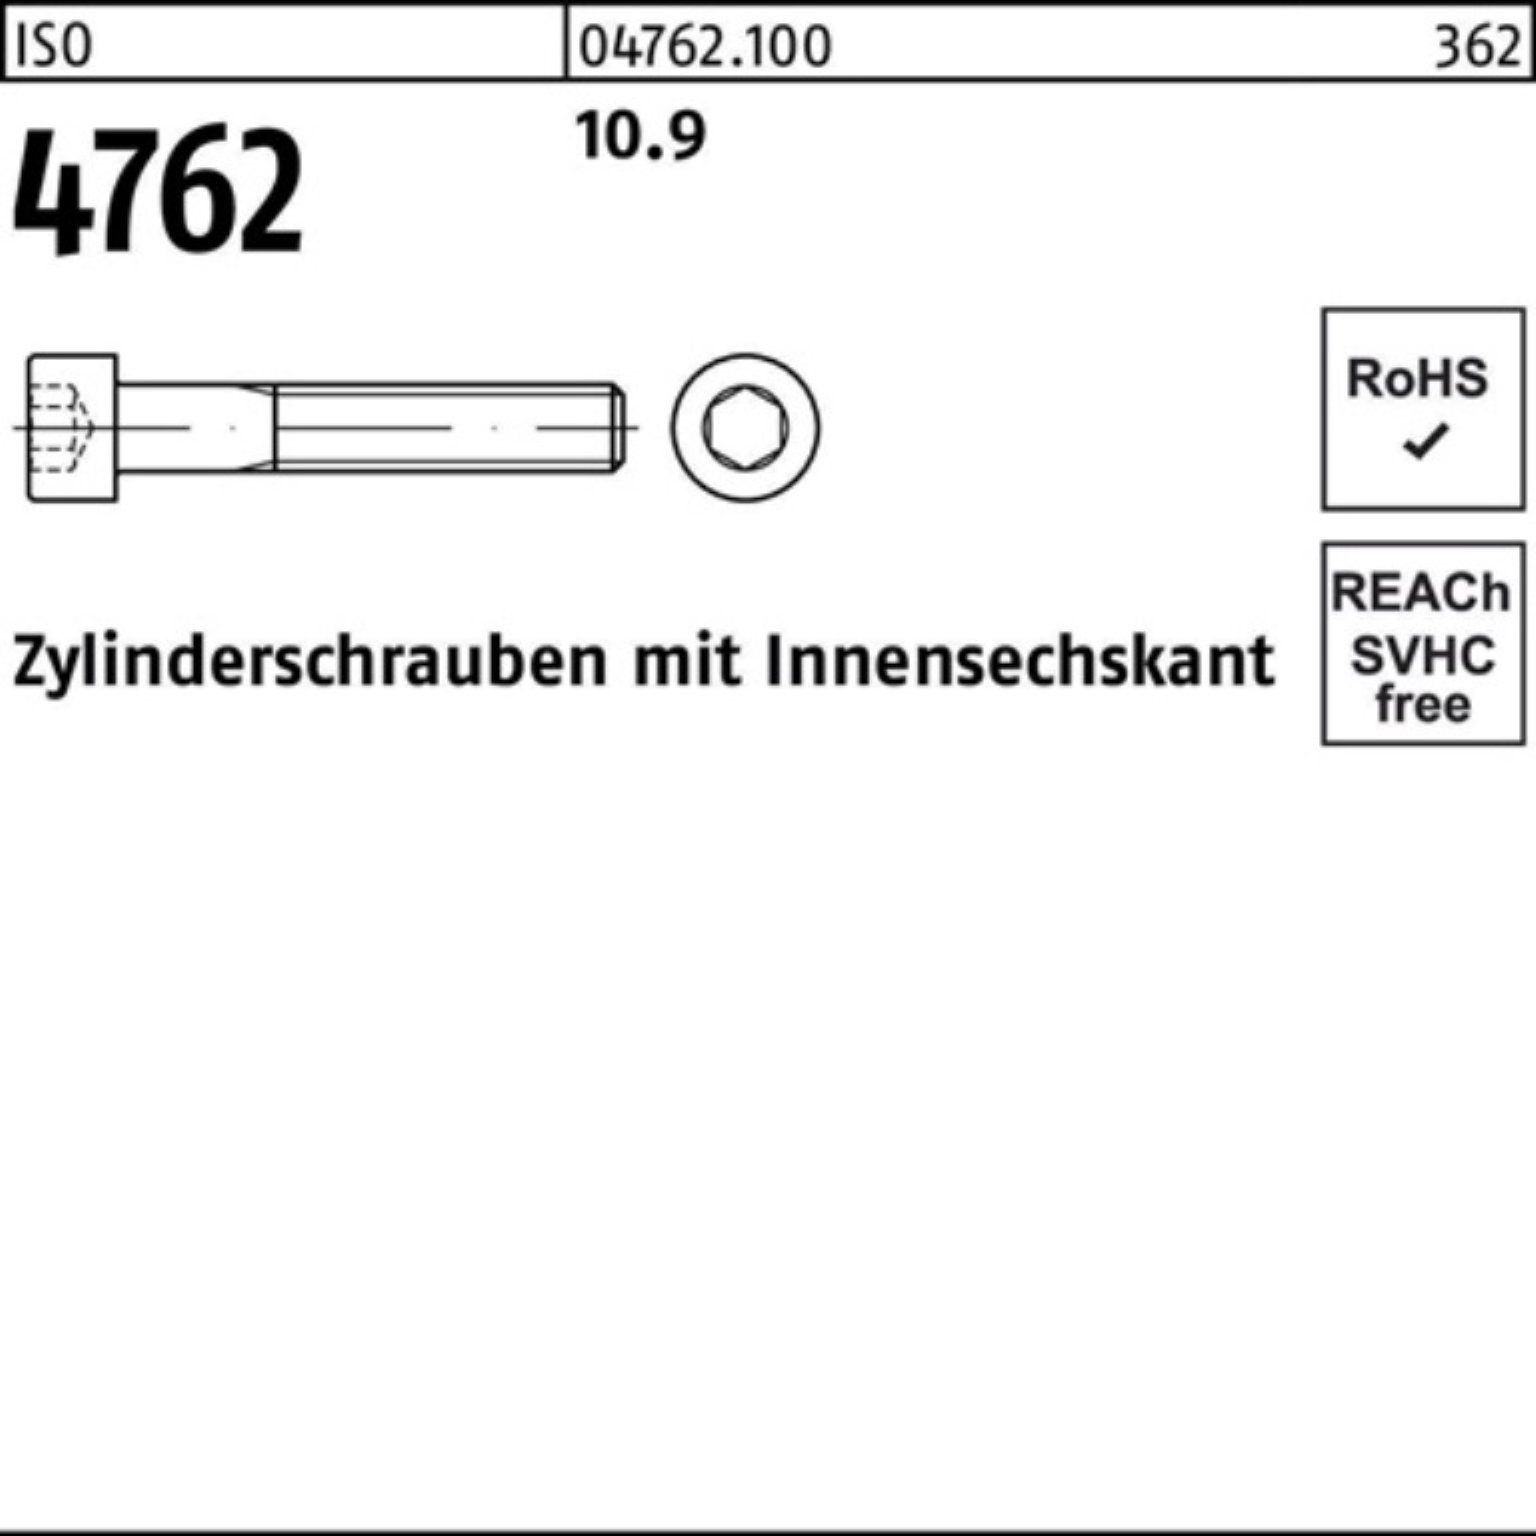 25 400 ISO Pack 4762 Reyher Zylinderschraube Innen-6kt 10.9 Stück Zylinderschraube 100er M12x